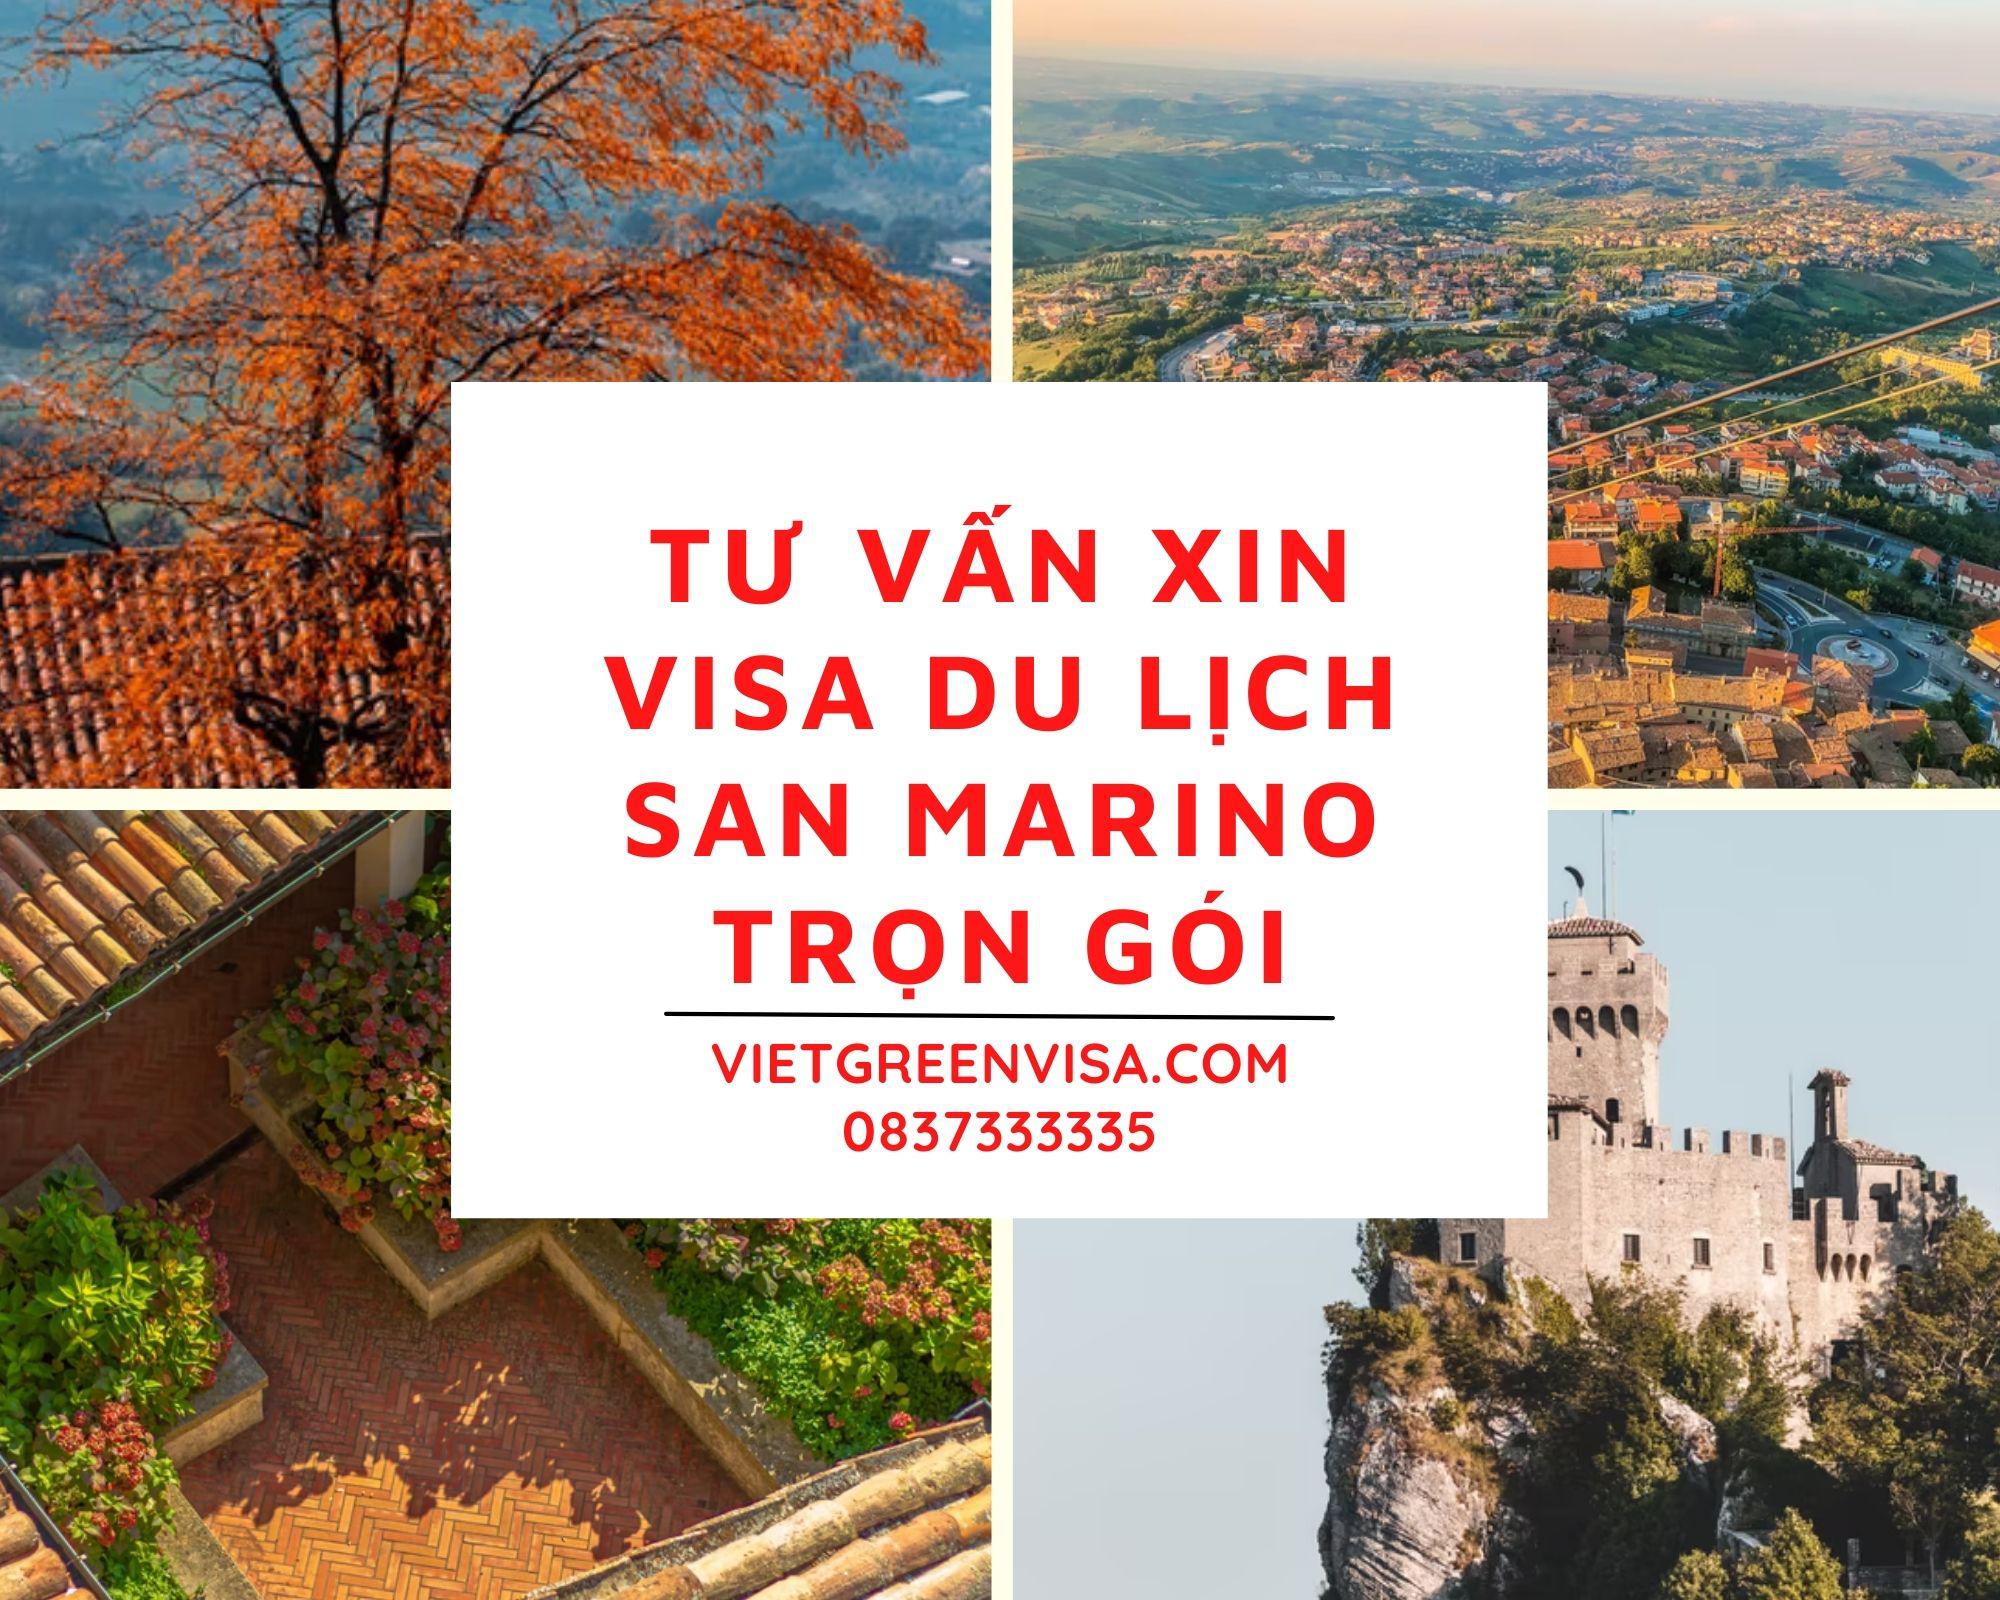 Tư vấn xin visa đi du lịch San Marino trọn gói